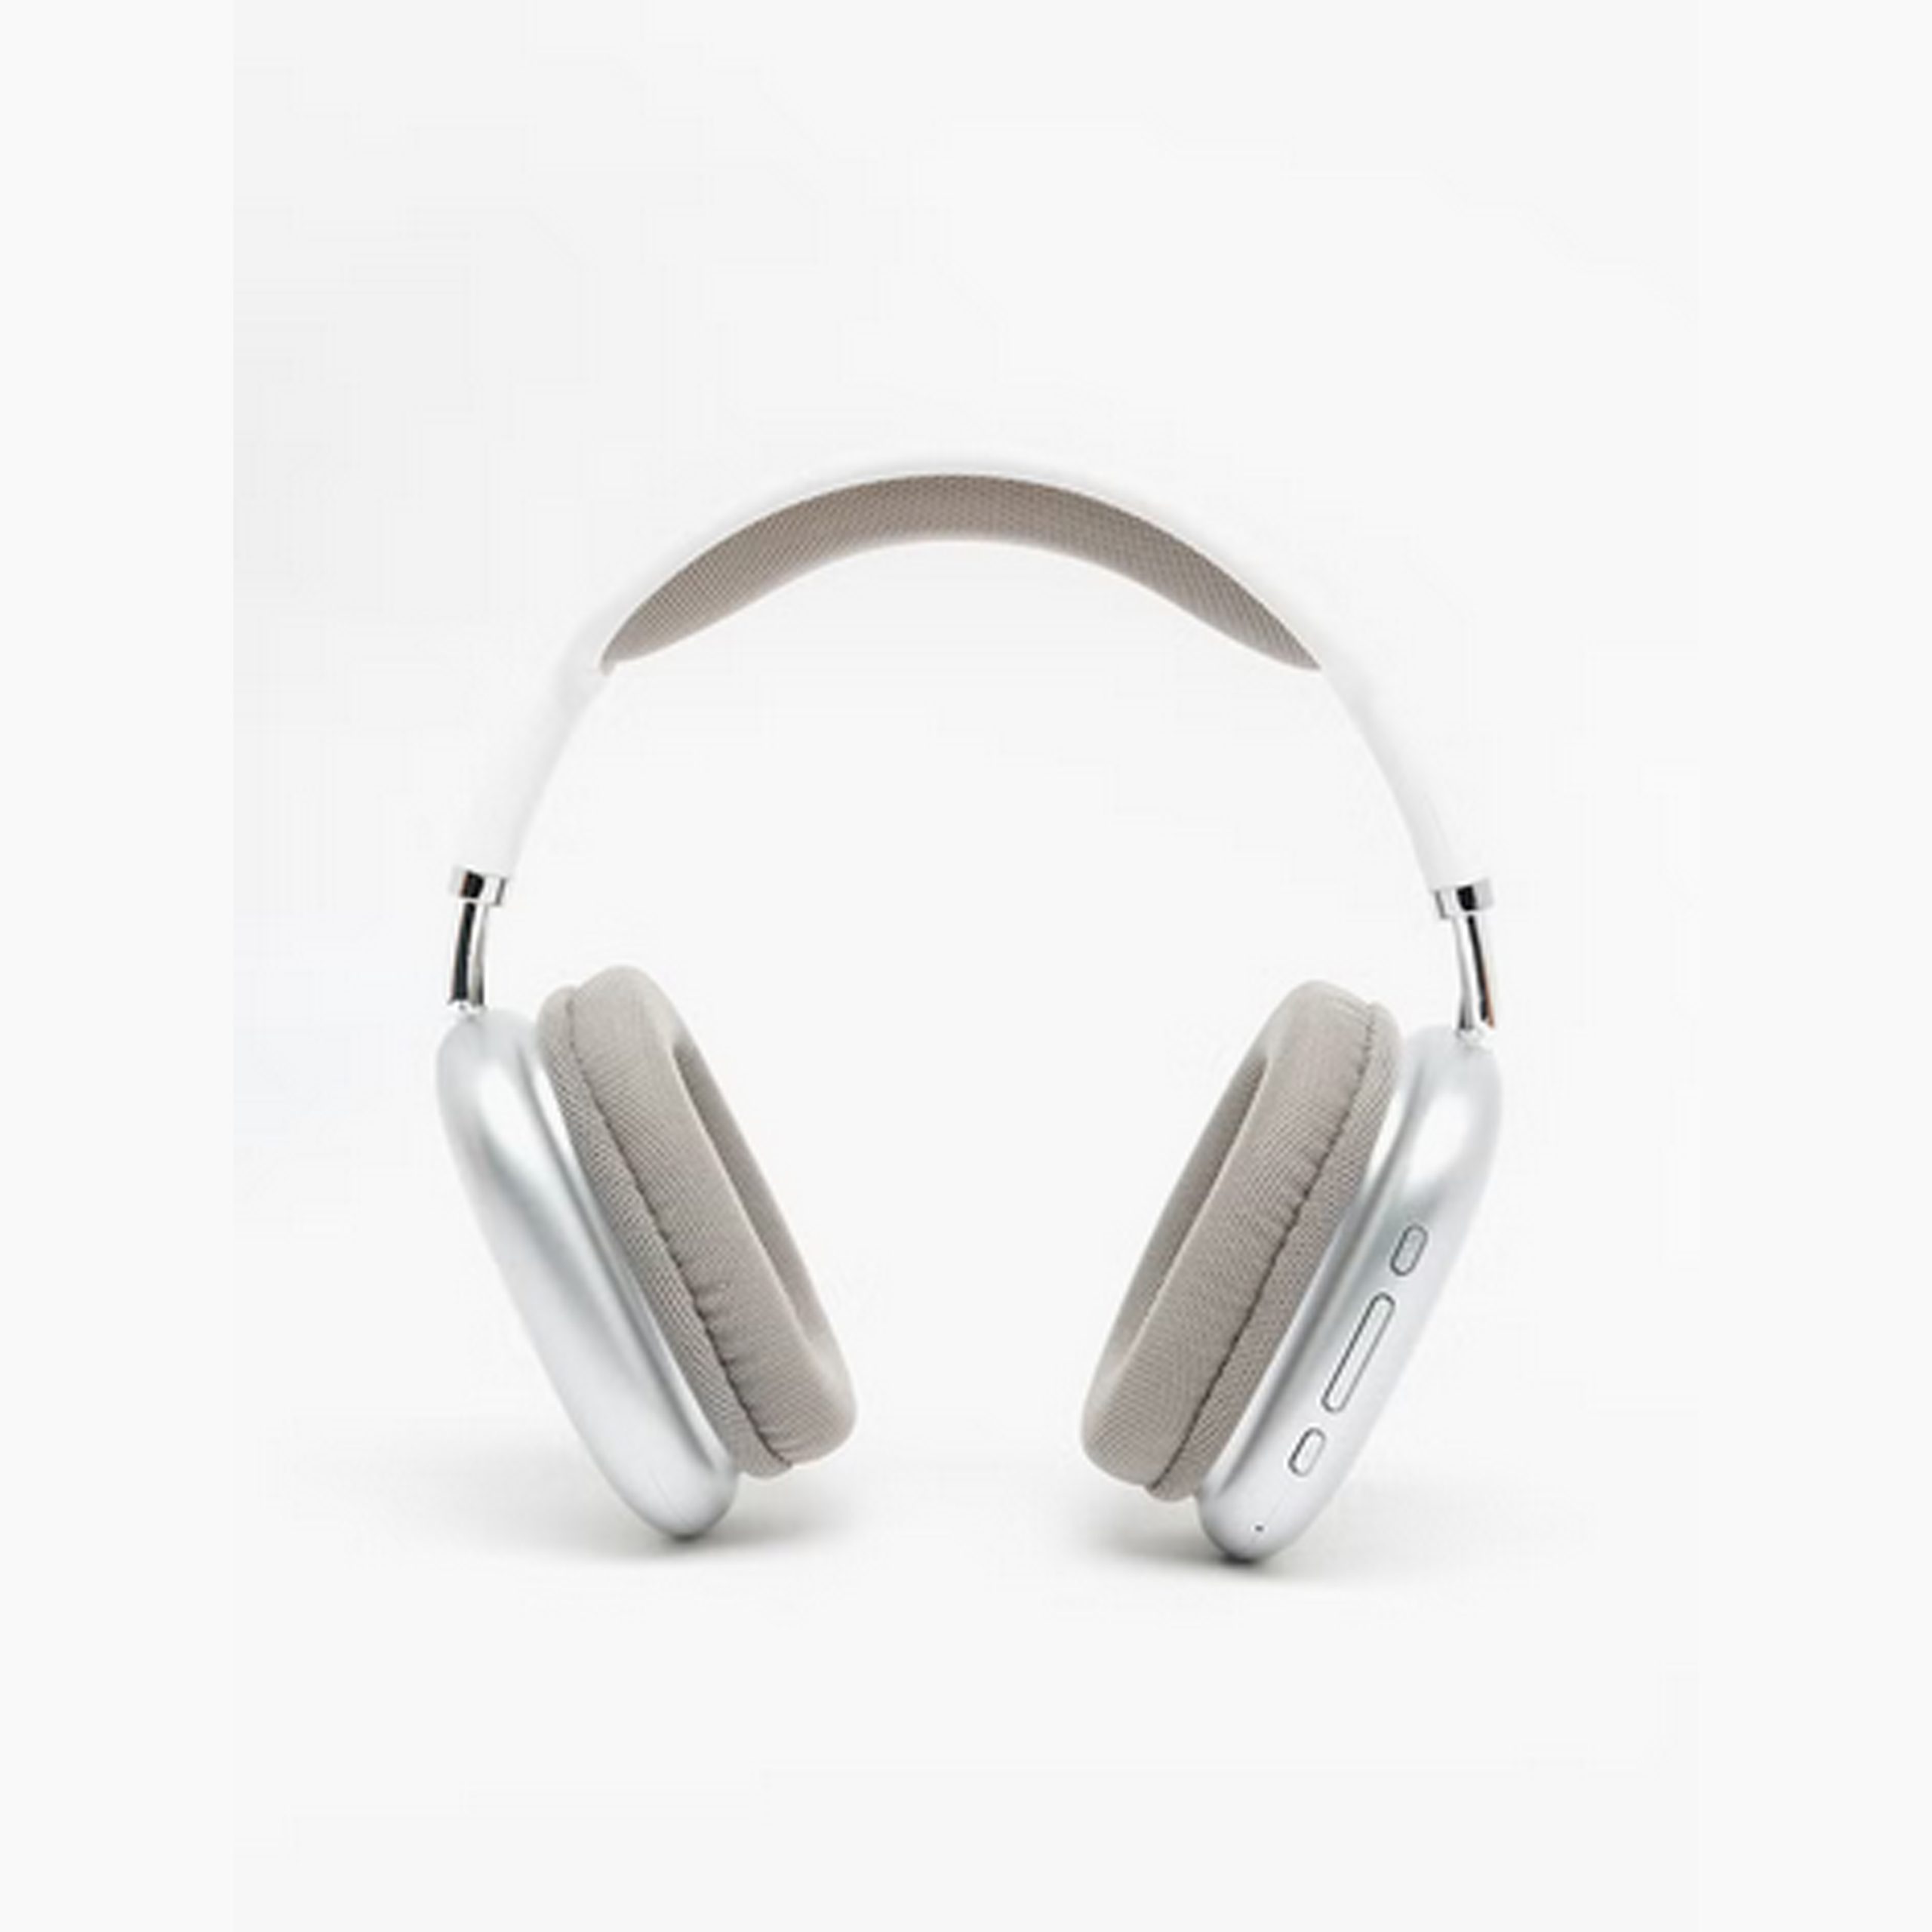 ????? ??????? ?????? Avviopro On Ear Wireless Bluetooth Headphone